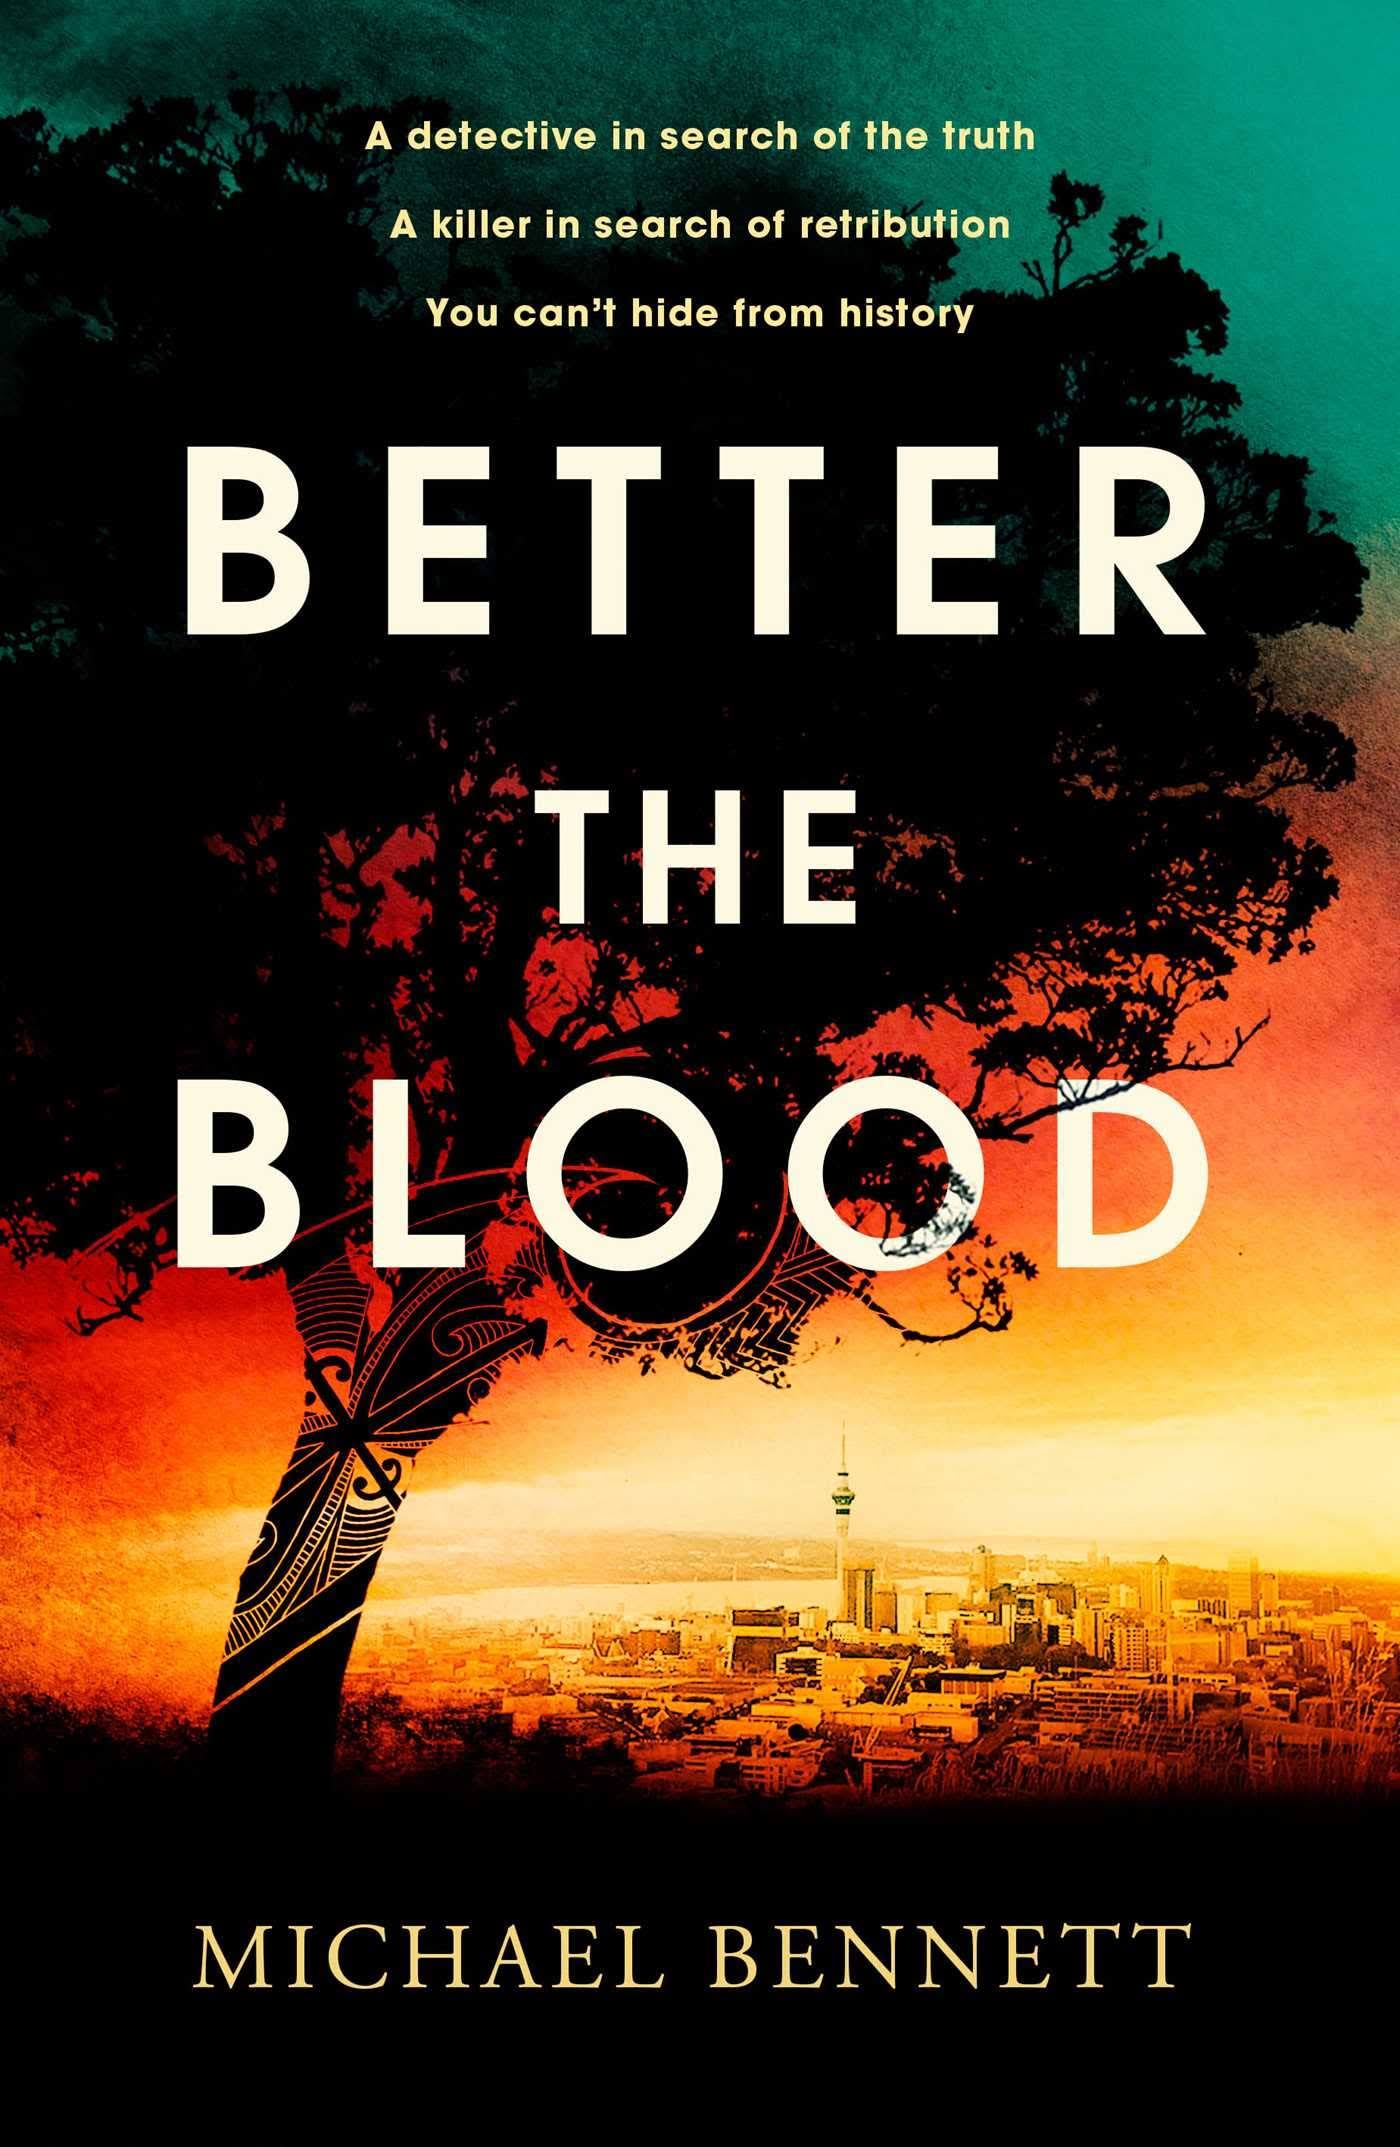 Better The Blood by Michael Bennett